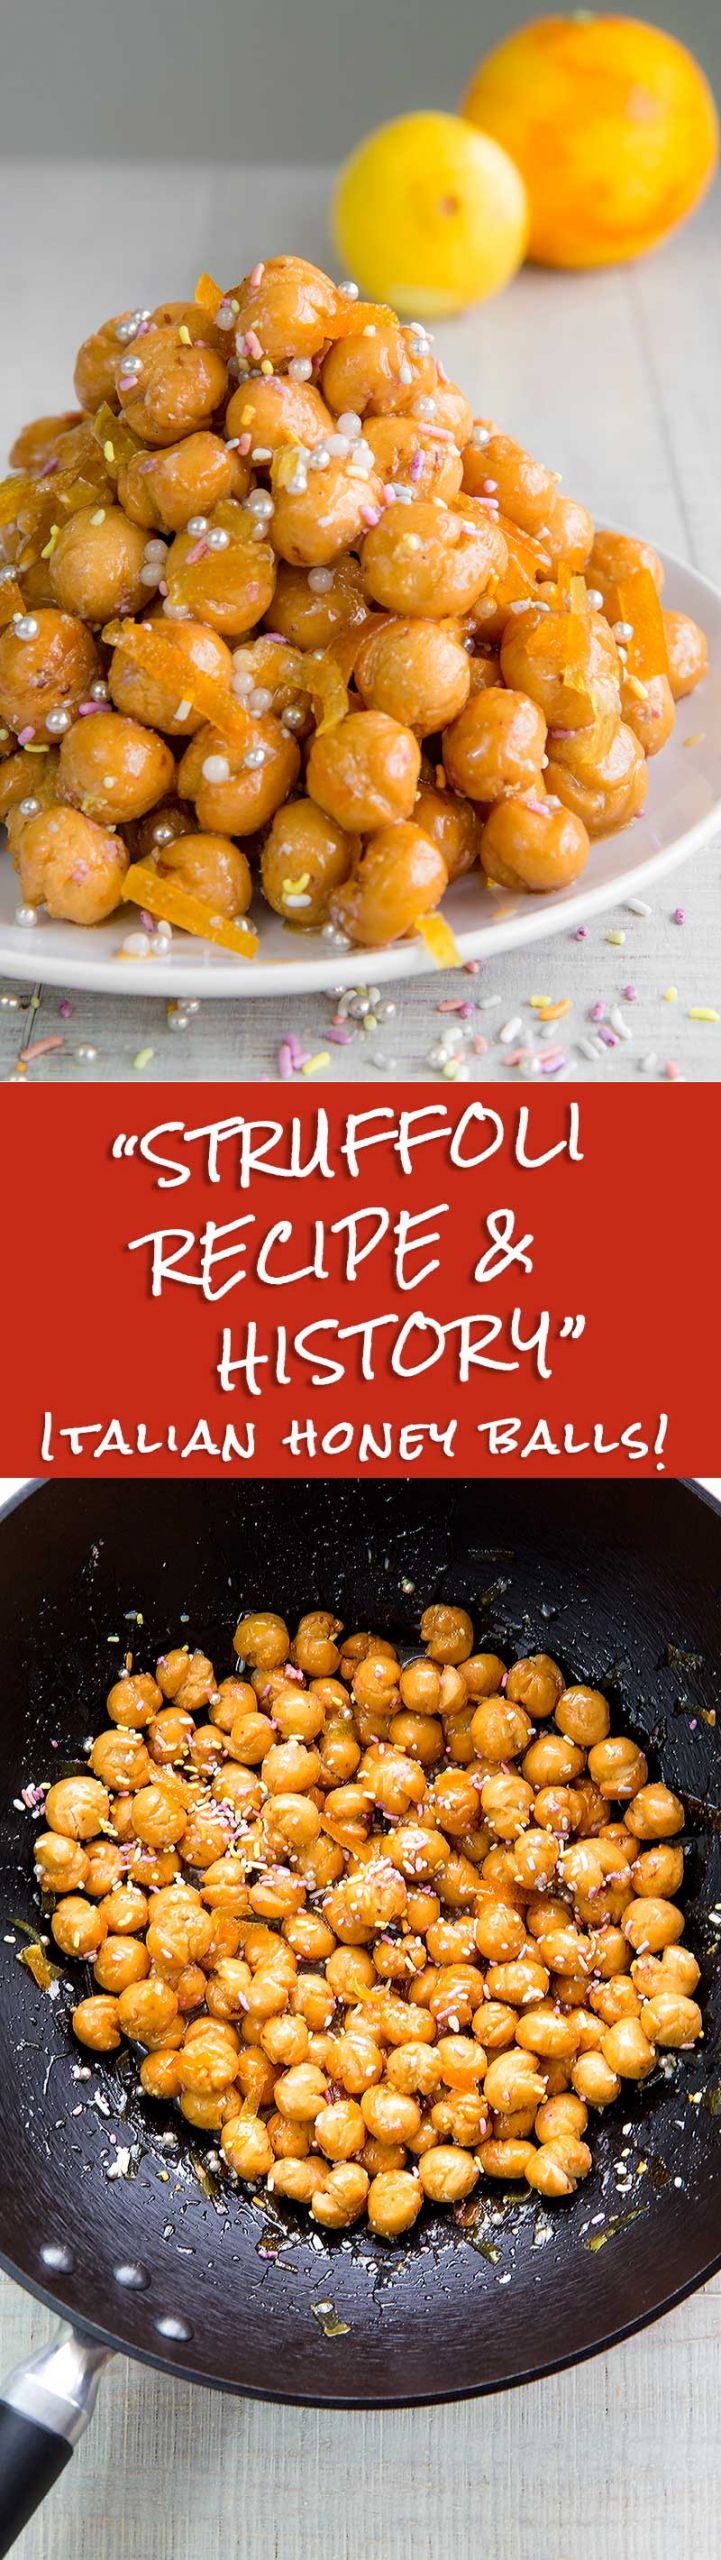 Italian Struffoli Recipes
 STRUFFOLI RECIPE AND HISTORY traditional Italian honey balls